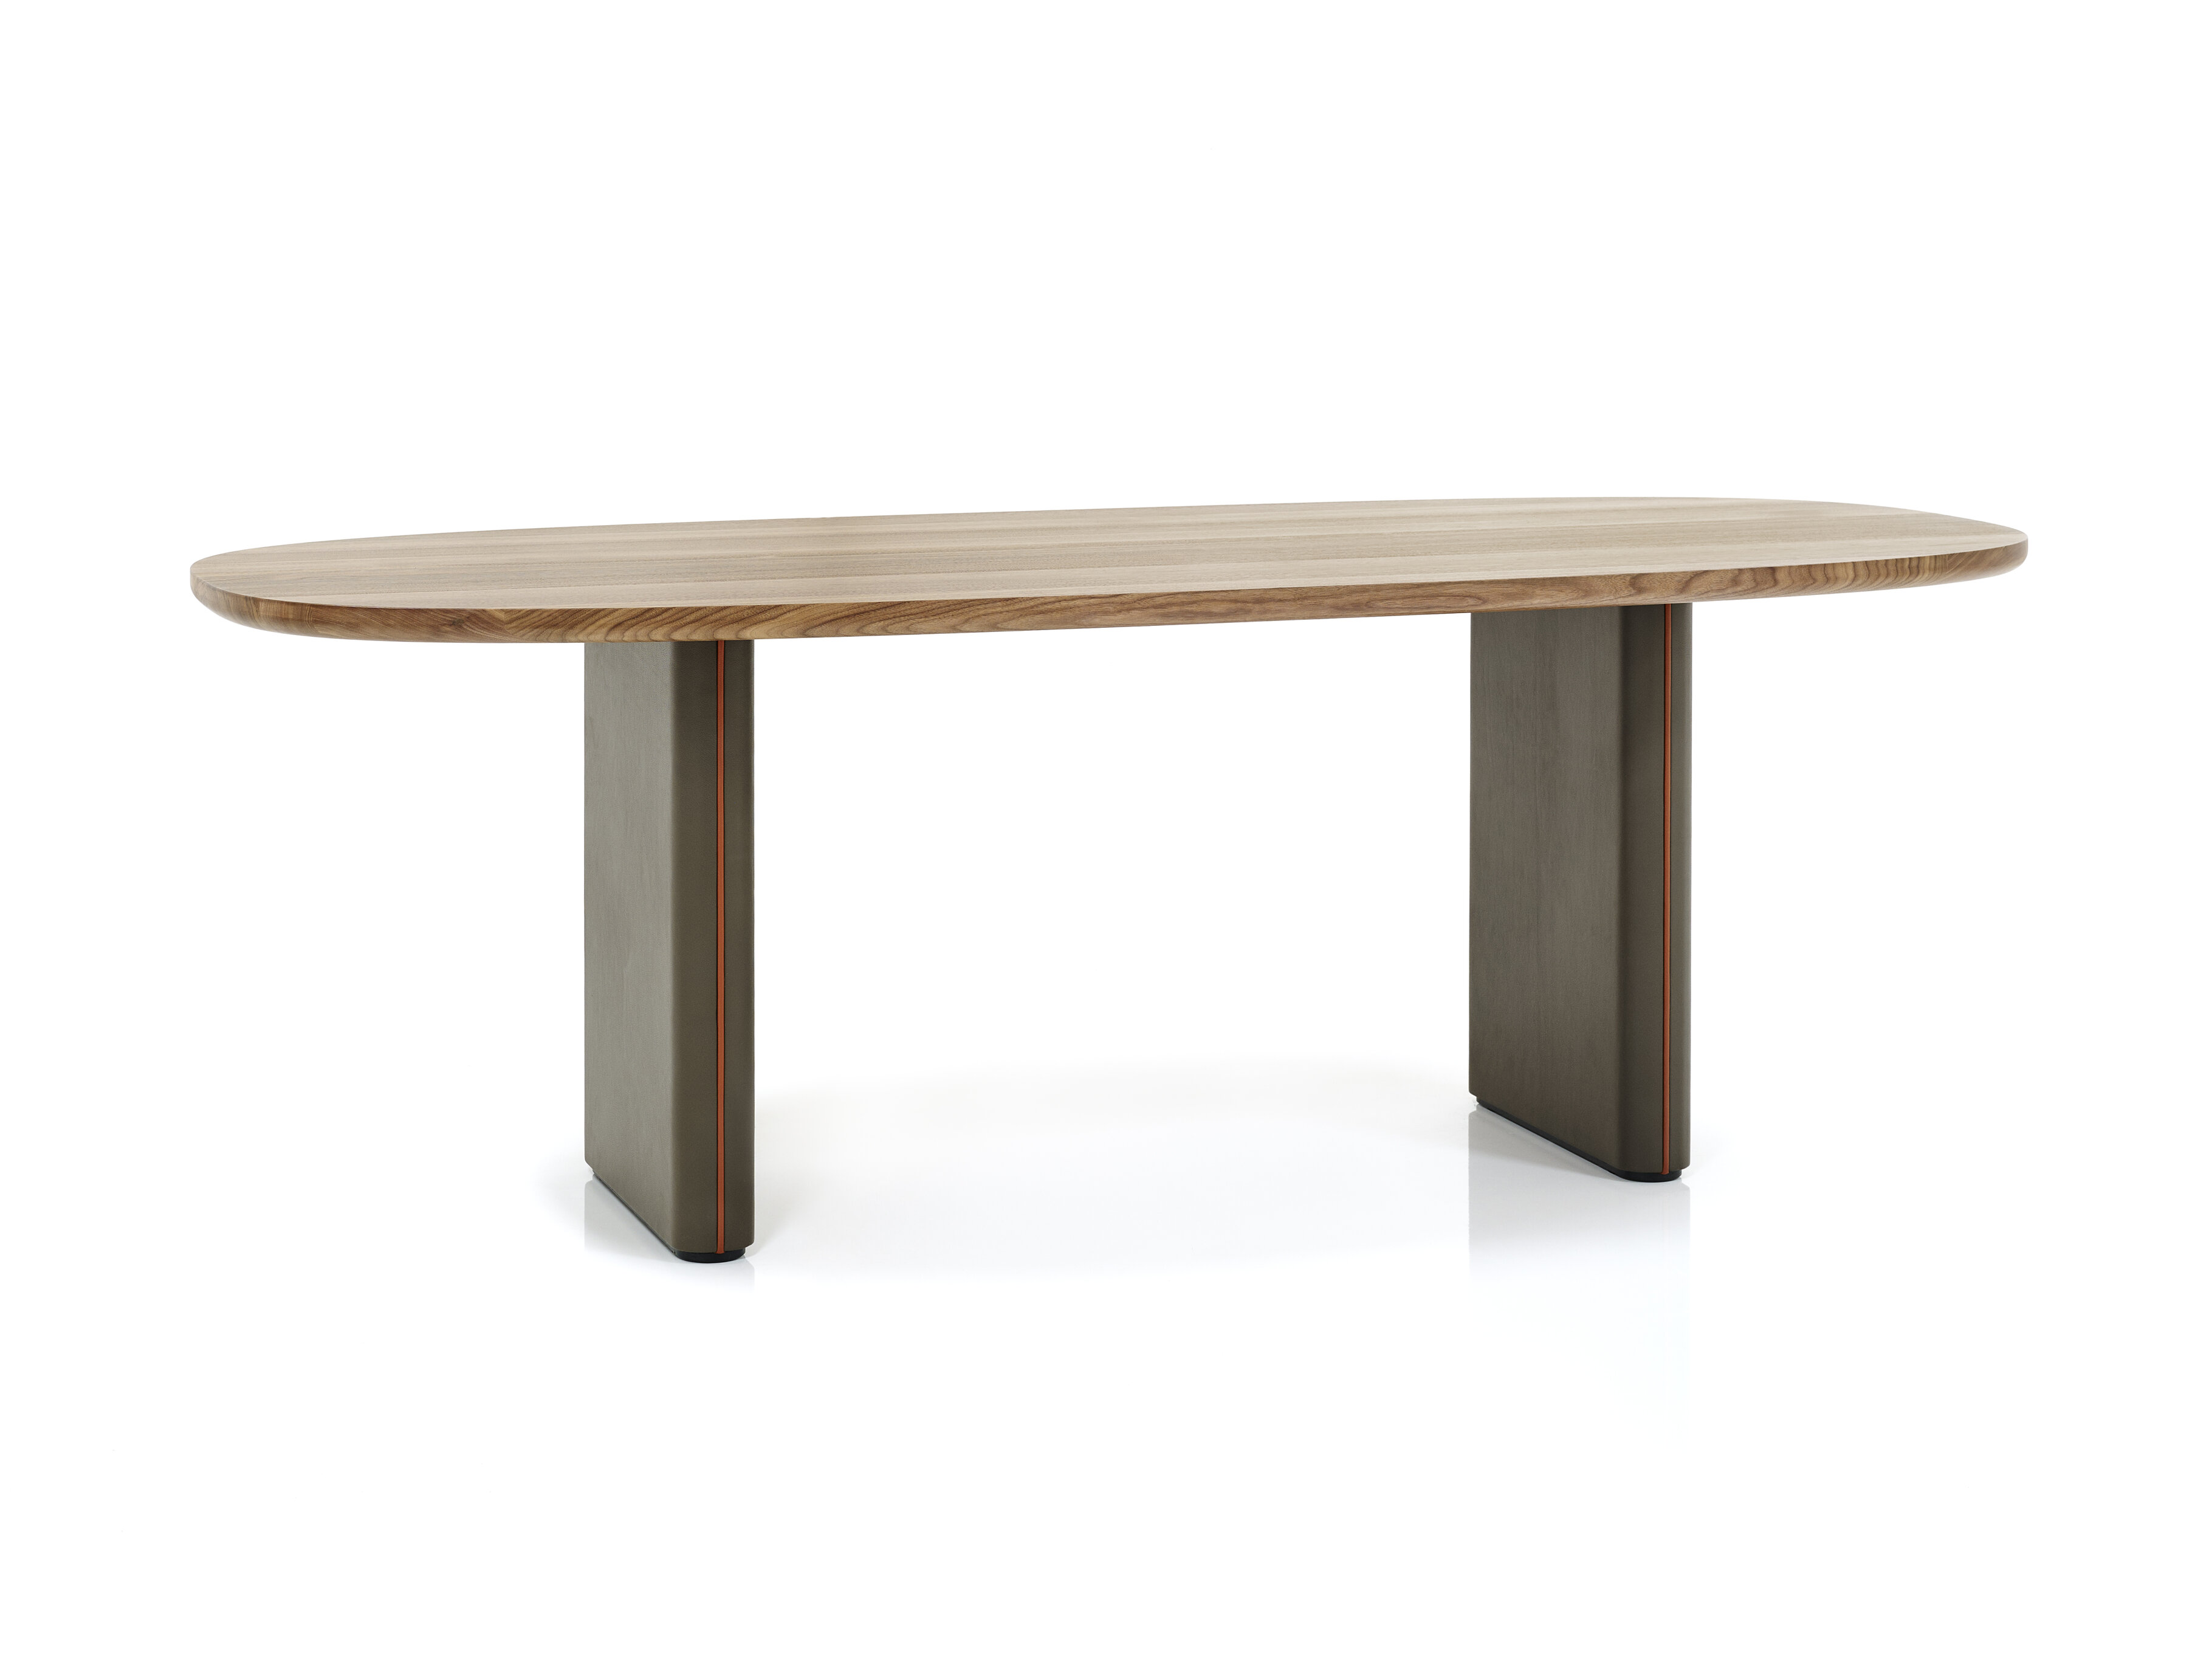 ovaler Merwyn Table mit einer Nussplatte, Tischbeine und Keder sind in einen unterschiedlichen braunen Leder